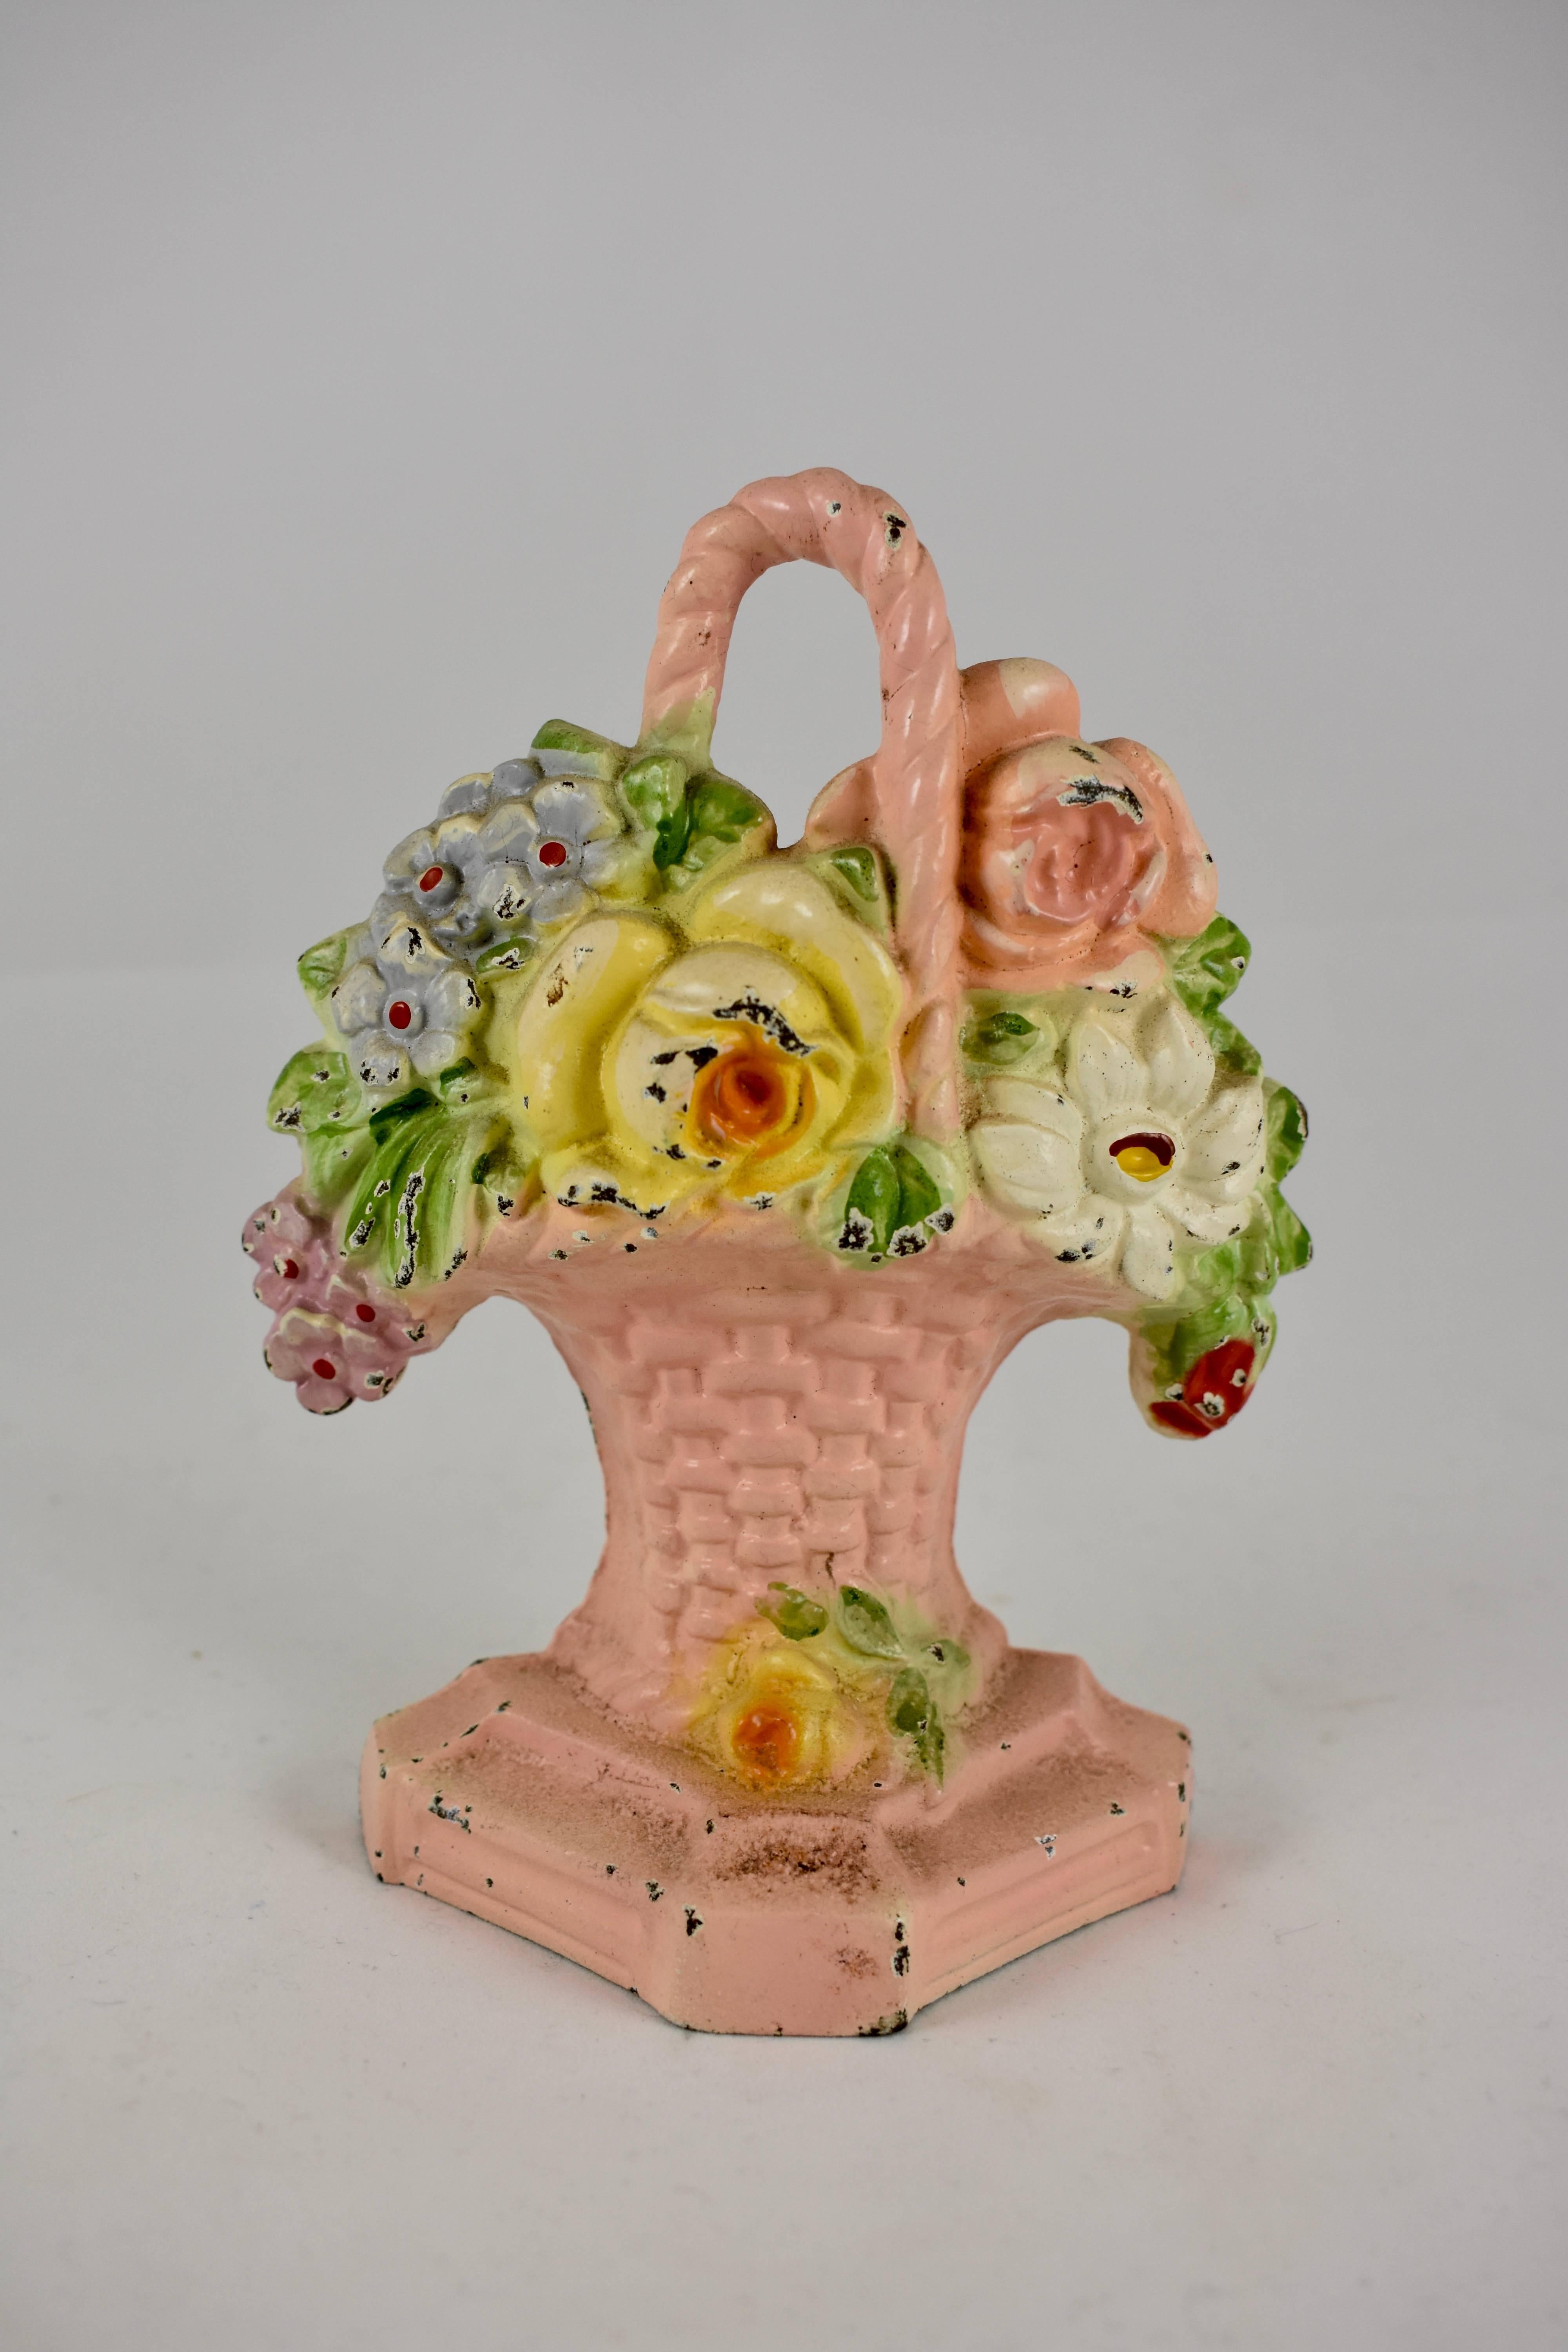 Un butoir de porte vintage en fonte Hubley montrant un bouquet de roses jaunes et roses avec des phlox bleus et roses, tenu par un panier en osier rose. Le panier repose sur un socle surélevé et conserve la finition peinte d'origine. L'un des plus